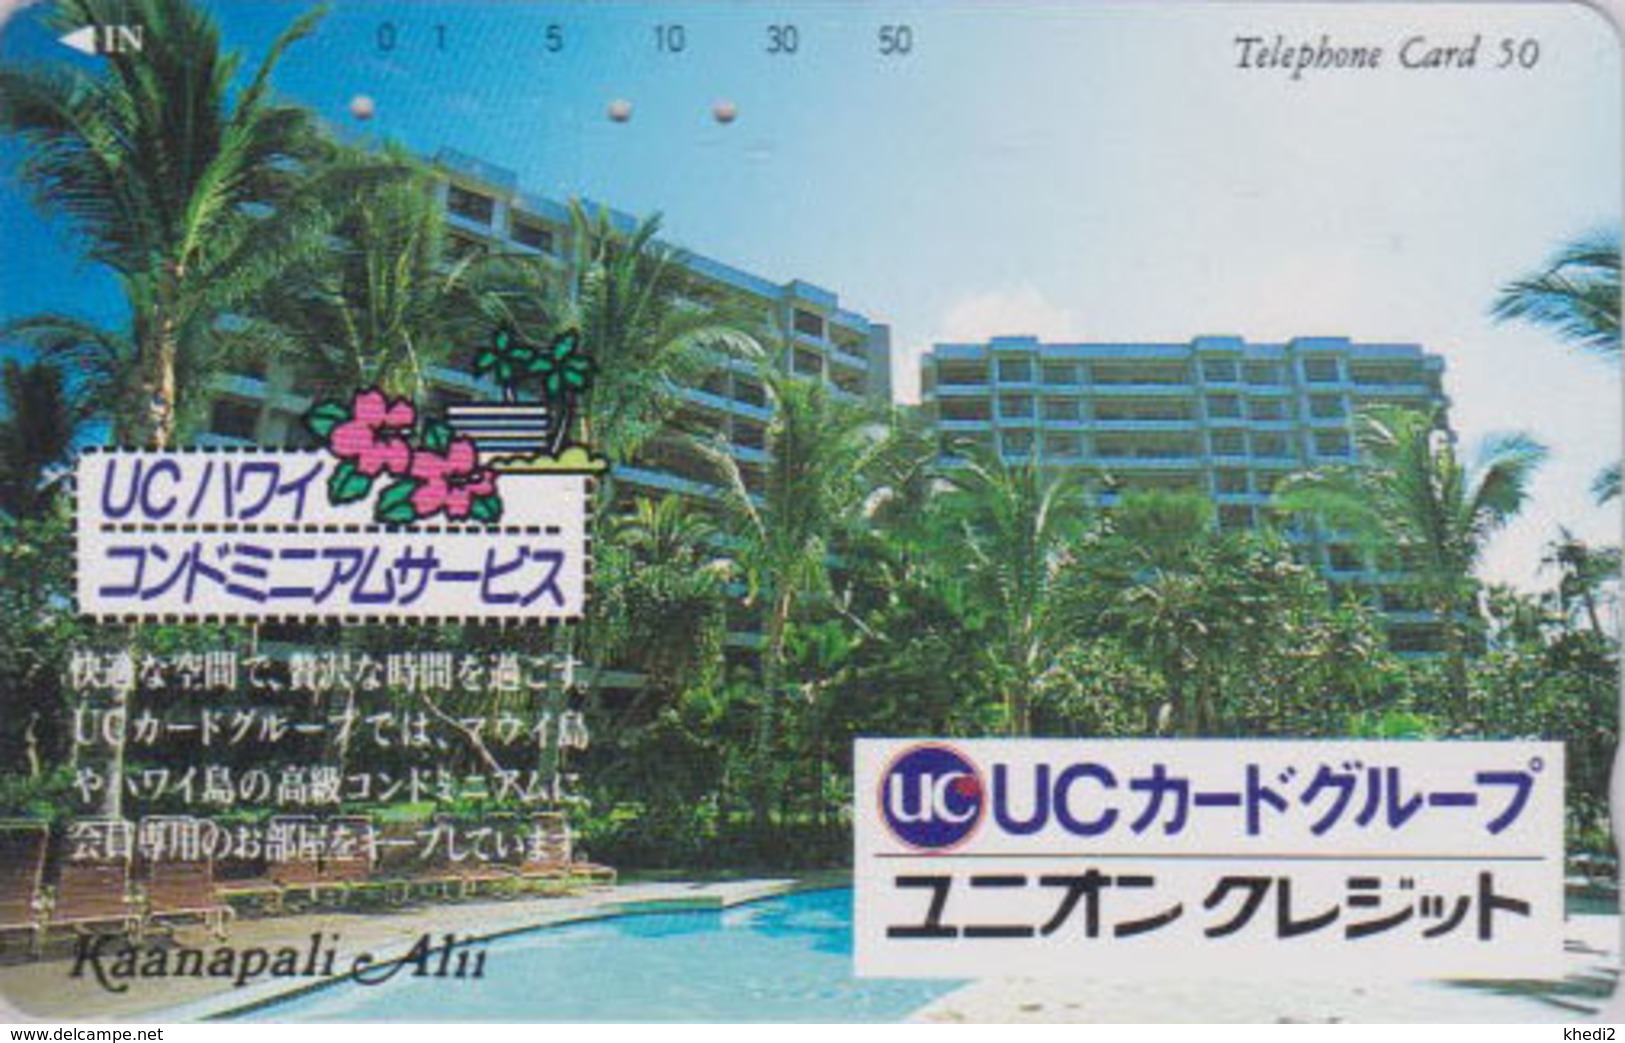 Télécarte Japon / 110-117617 - HAWAII - KAANAPALI - UC BANK CREDIT CARD / Modèle 2 - Japan Phonecard - Site USA 460 - Timbres & Monnaies